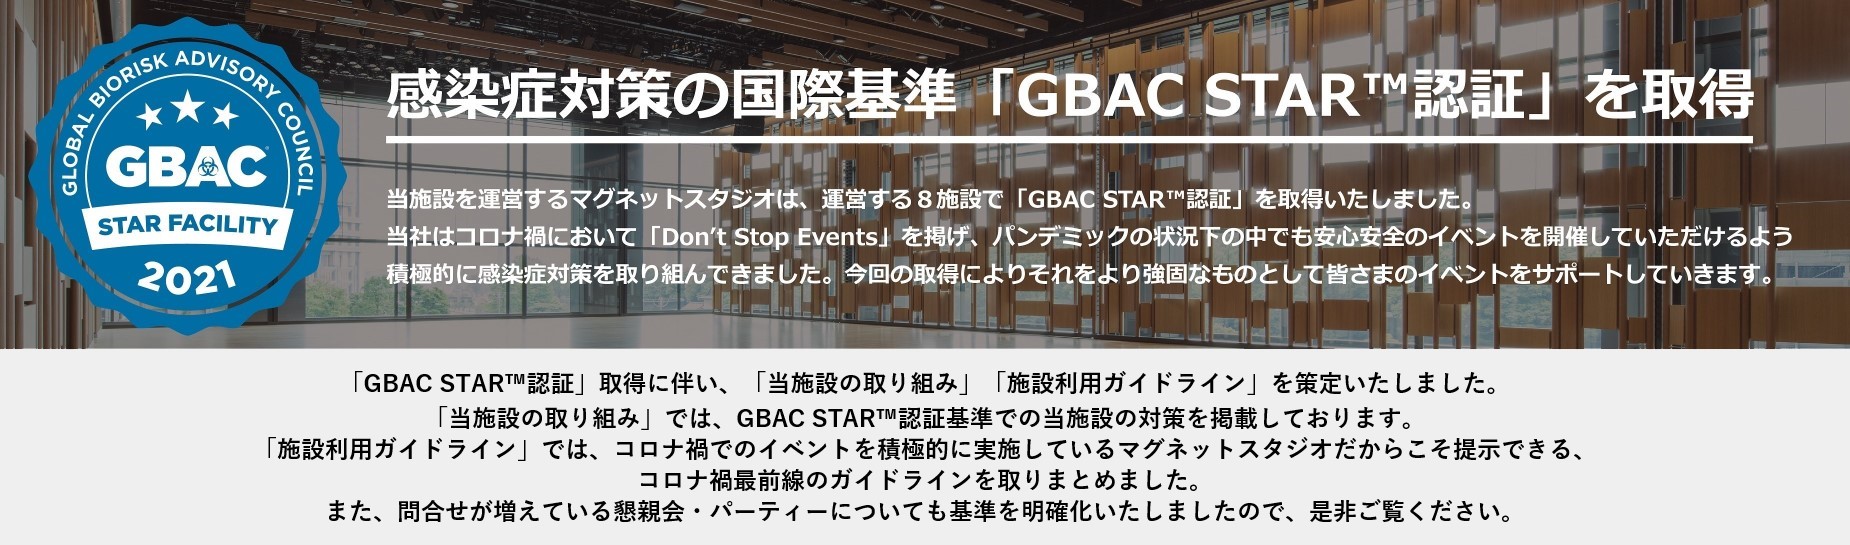 GBAC STAR 2021